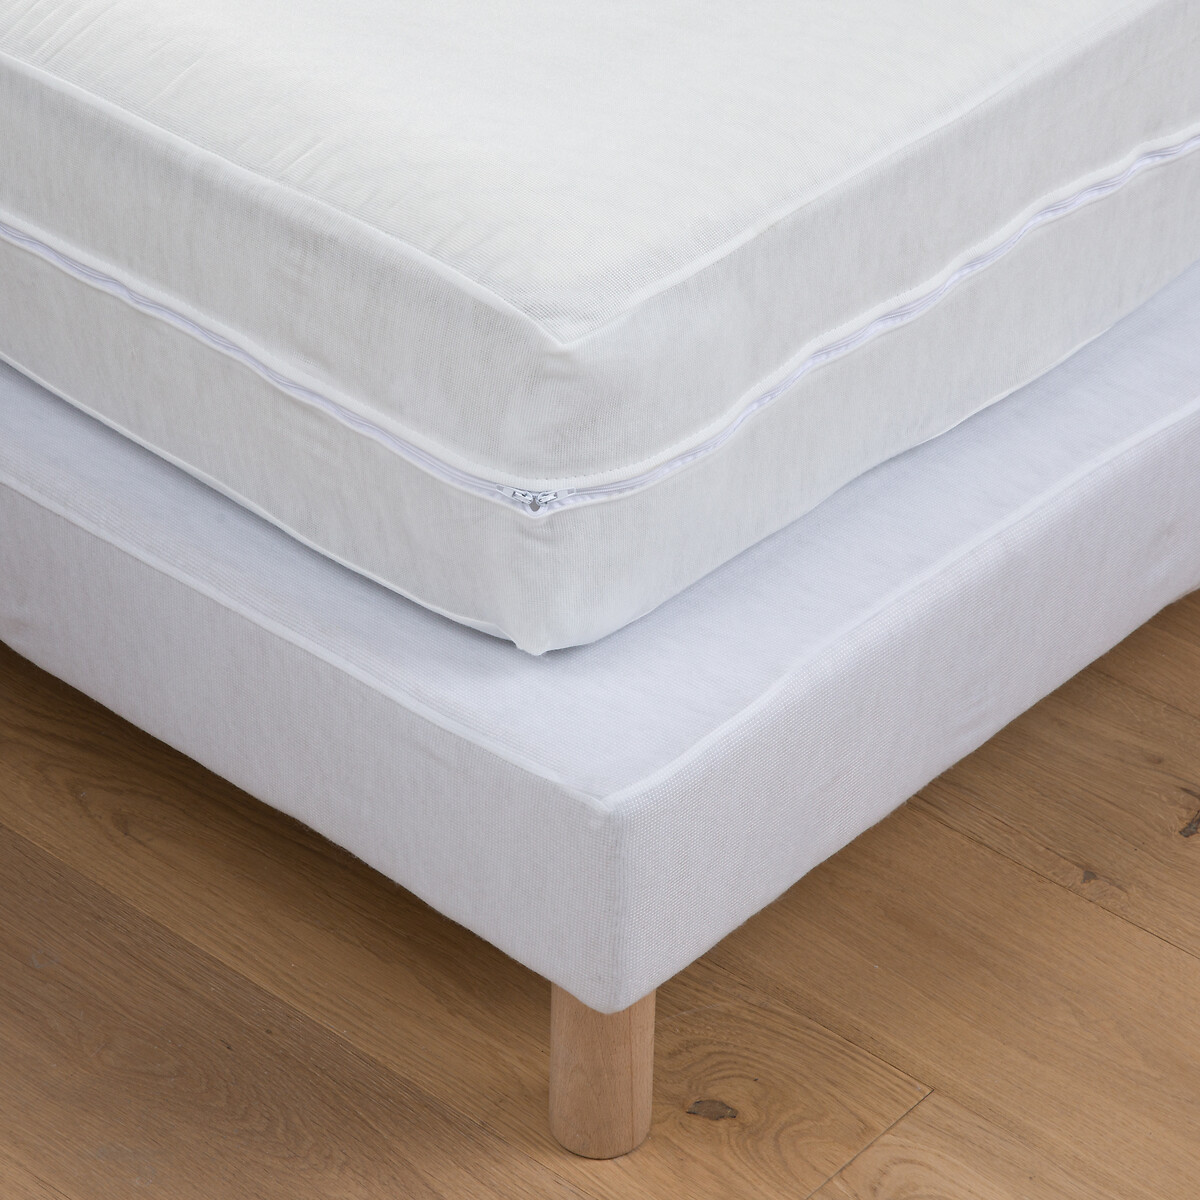 Чехол La Redoute Для кровати 120 x 190 см белый, размер 120 x 190 см - фото 1